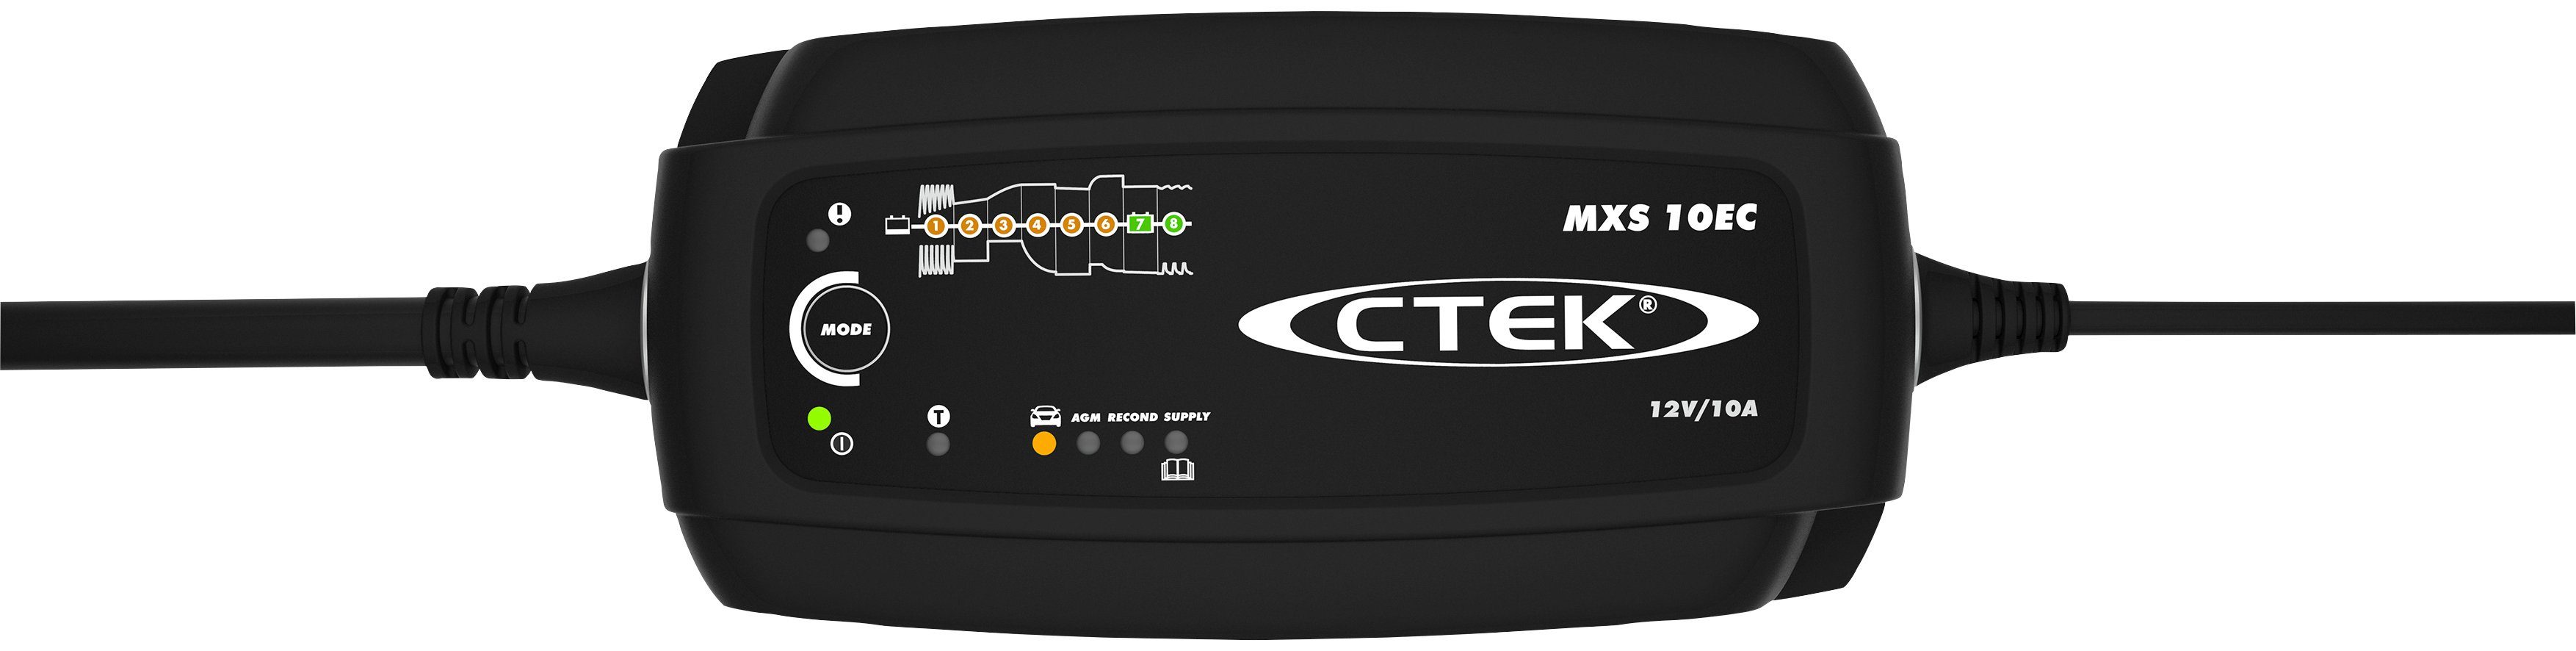 CTEK MXS10EC Batterie-Ladegerät (Vollautomatischer, forget“-Ladevorgang) and „Connect 8-stufiger